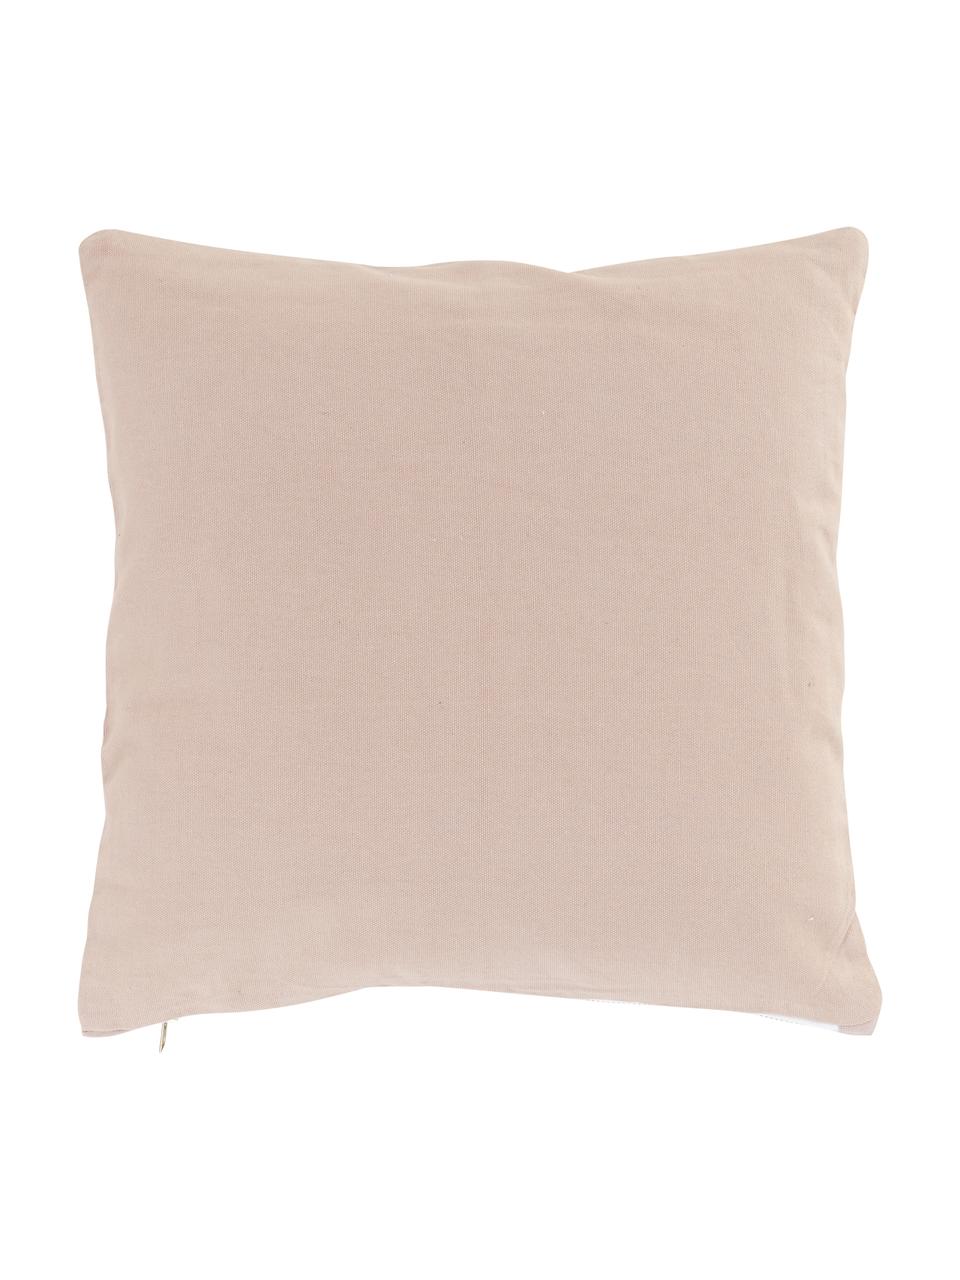 Poduszka z wypełnieniem Scandi, Tapicerka: 100% bawełna, Pudroworóżowy, odcienie złotego, S 40 x D 40 cm